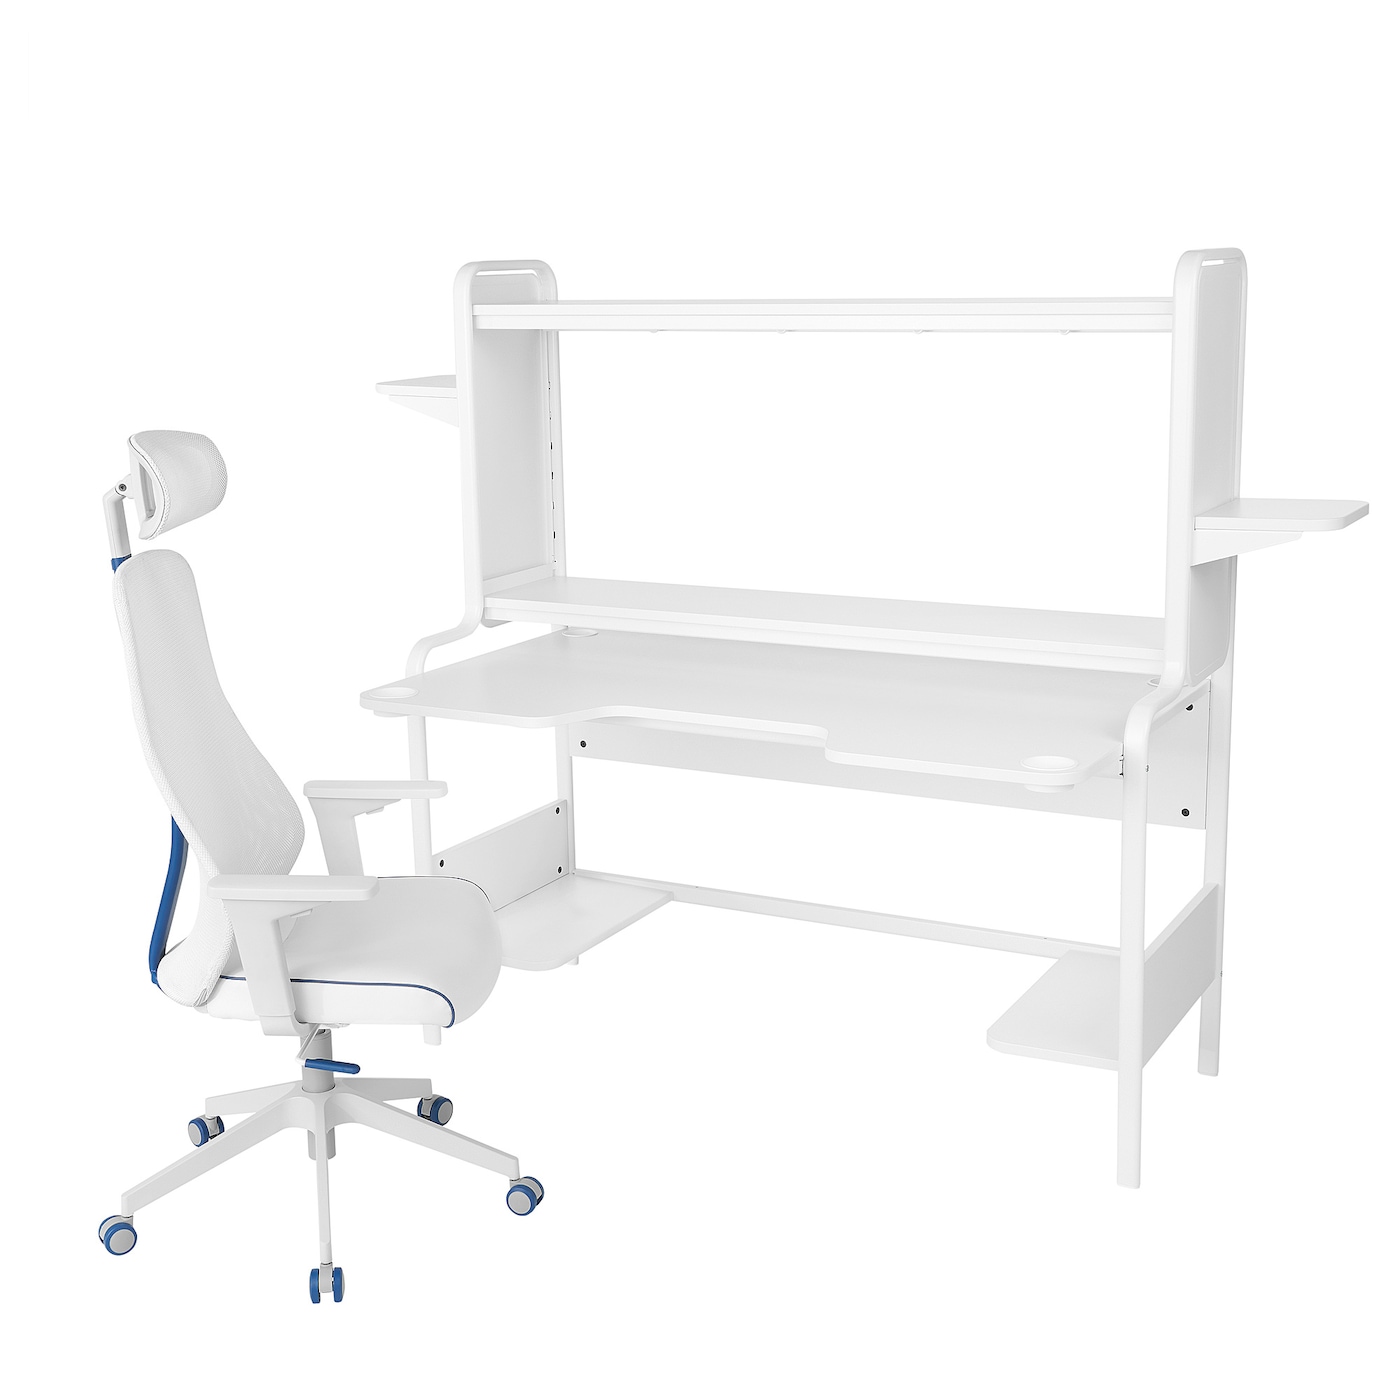 Игровой стол и стул - IKEA FREDDE / MATCHSPEL, 185х74х146 см, белый/синий, ФРЕДДЕ/МАТЧСПЕЛ ИКЕА